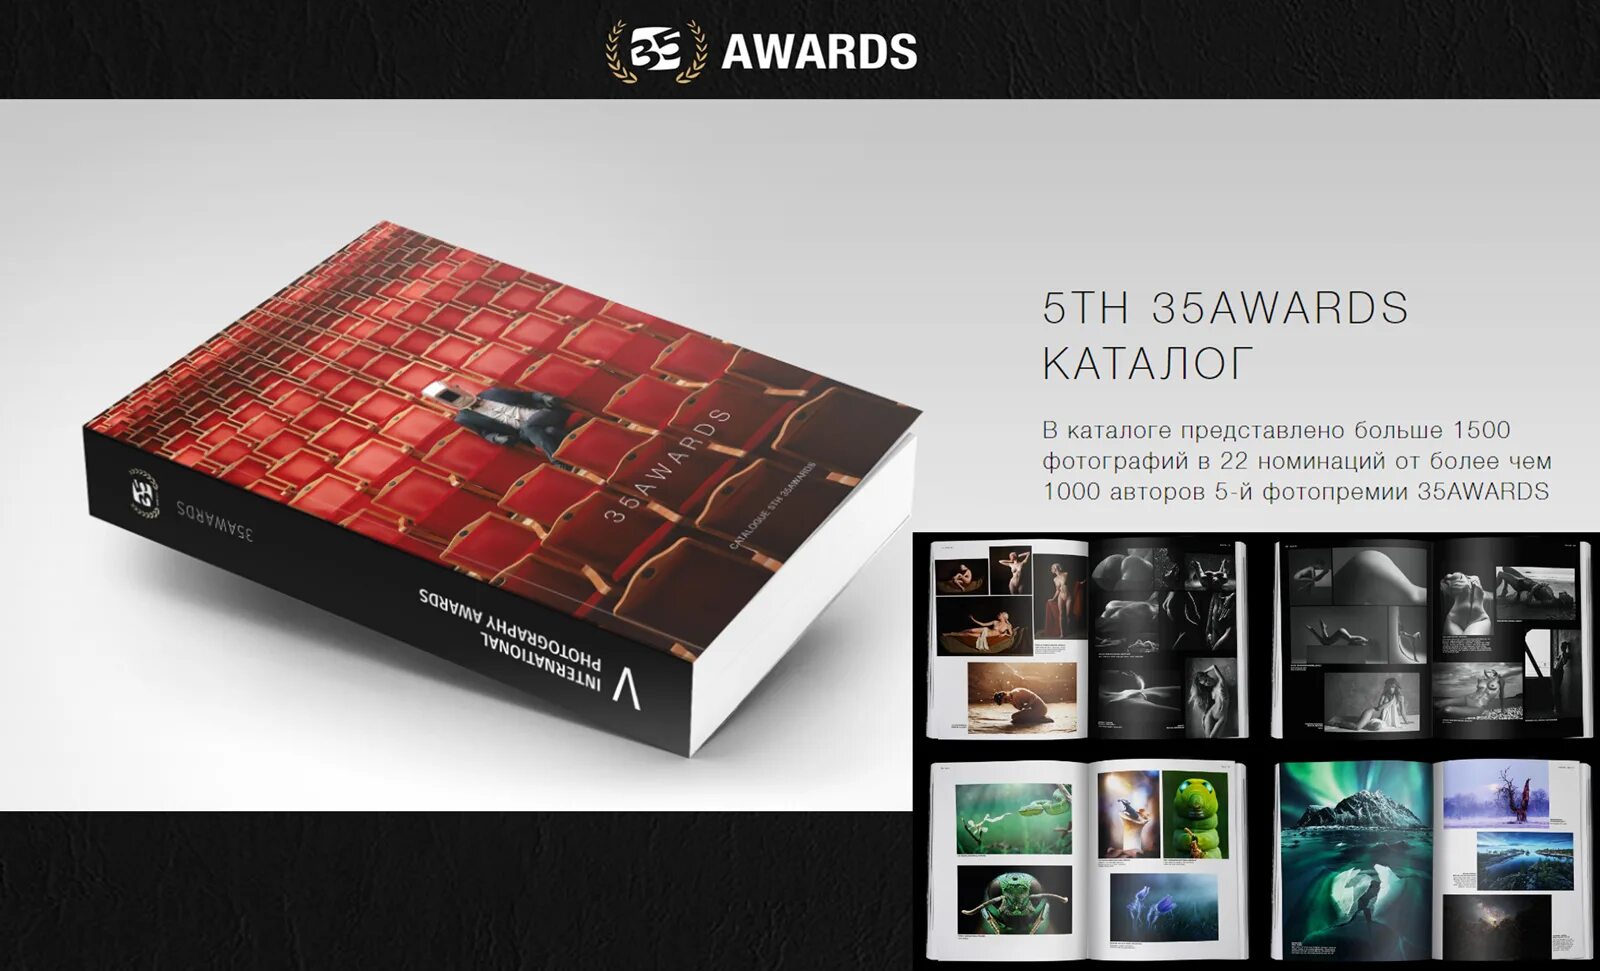 Каталог доступен. Каталог Awards 35 Awards. Лучшие каталоги фото. Каталог 5д. 35 Авардс фотоконкурс.